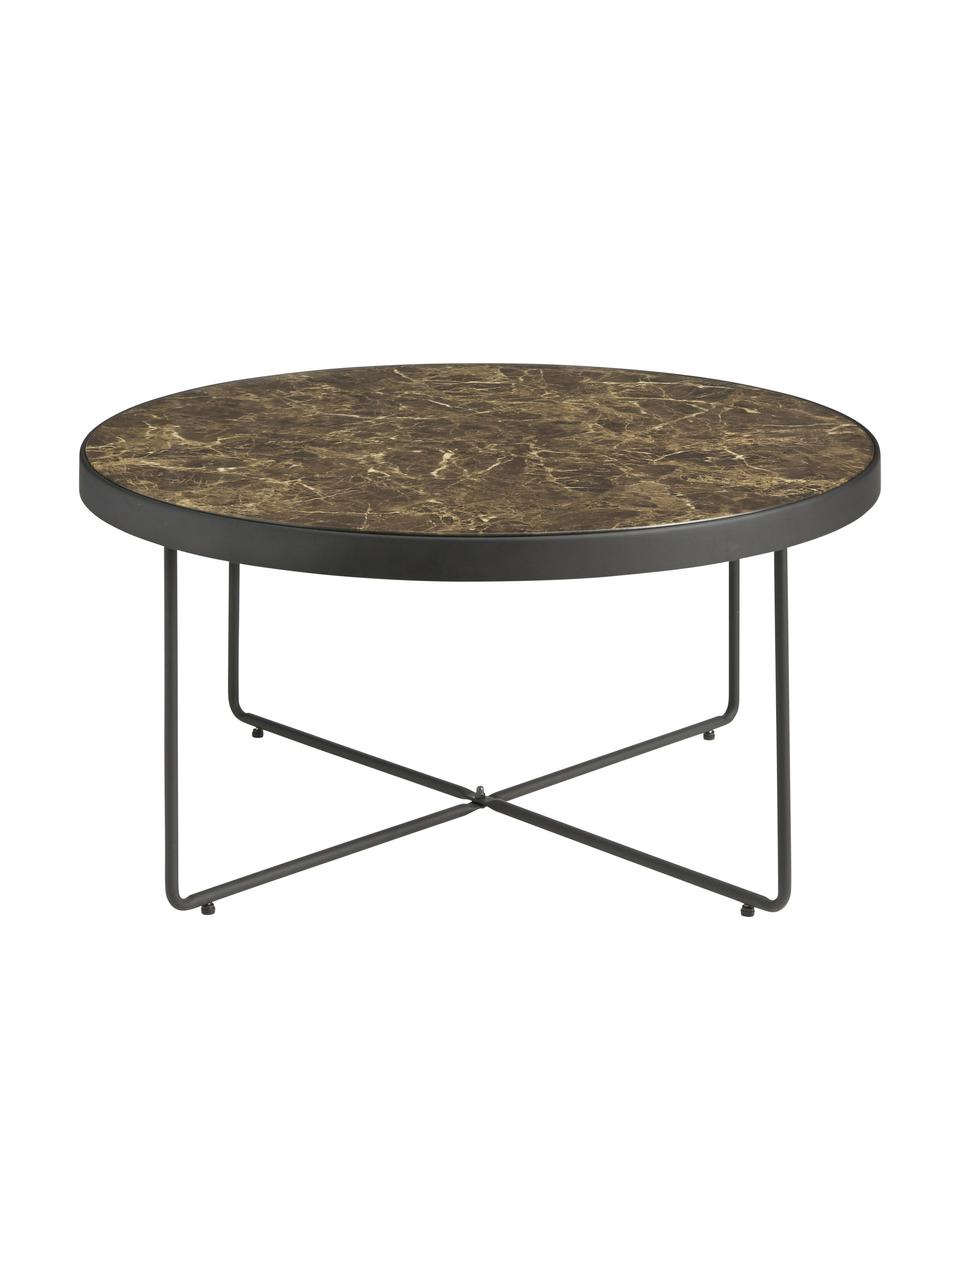 Kulatý kovový konferenční stolek s mramorovanou skleněnou deskou Gellina, Černá, hnědá, mramorovaná, Ø 80 cm